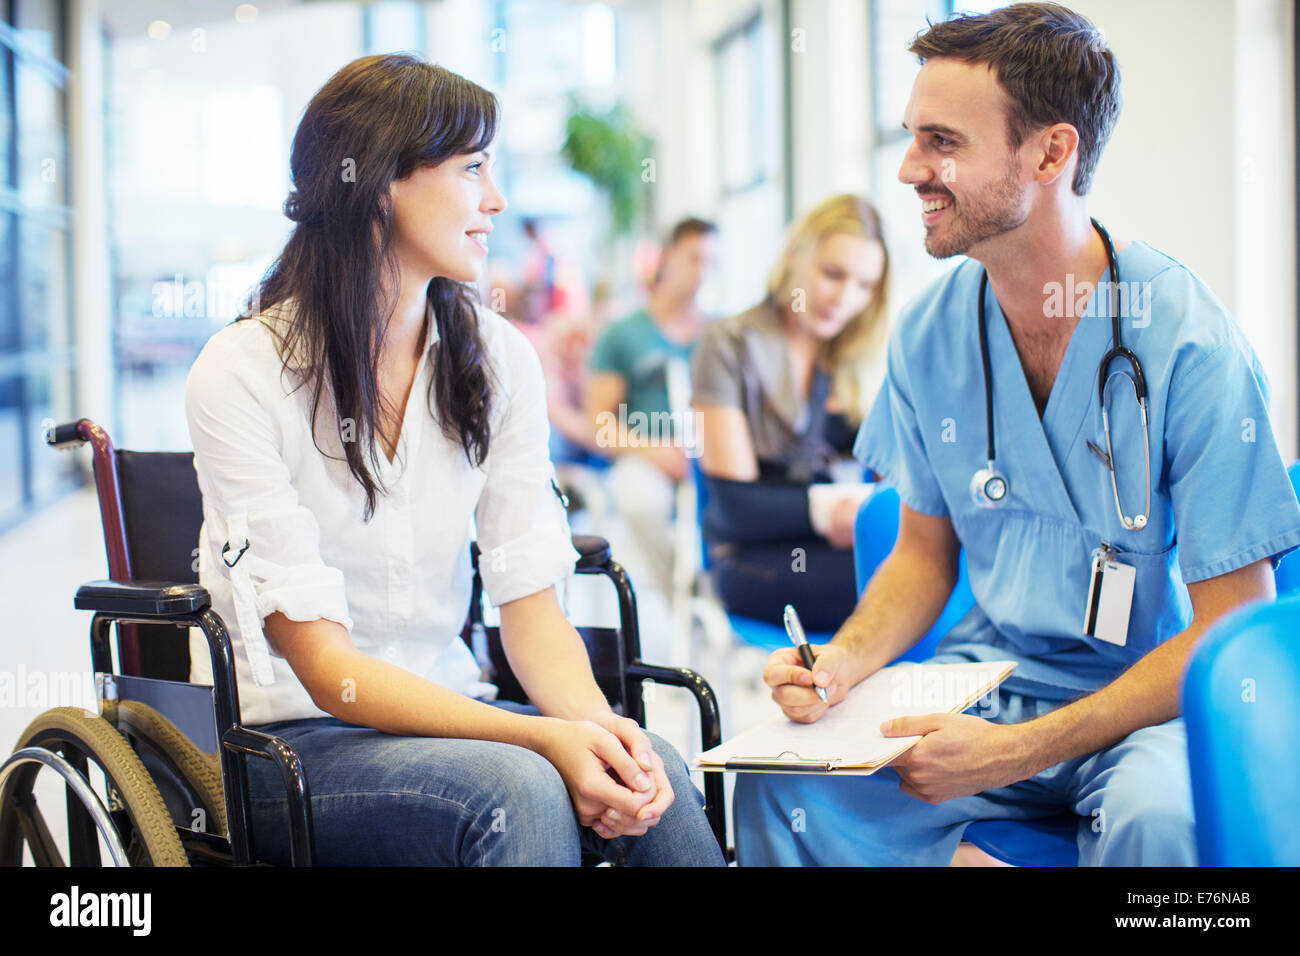 Patienten im Rollstuhl Gespräch im Krankenhaus Krankenschwester Stockfoto